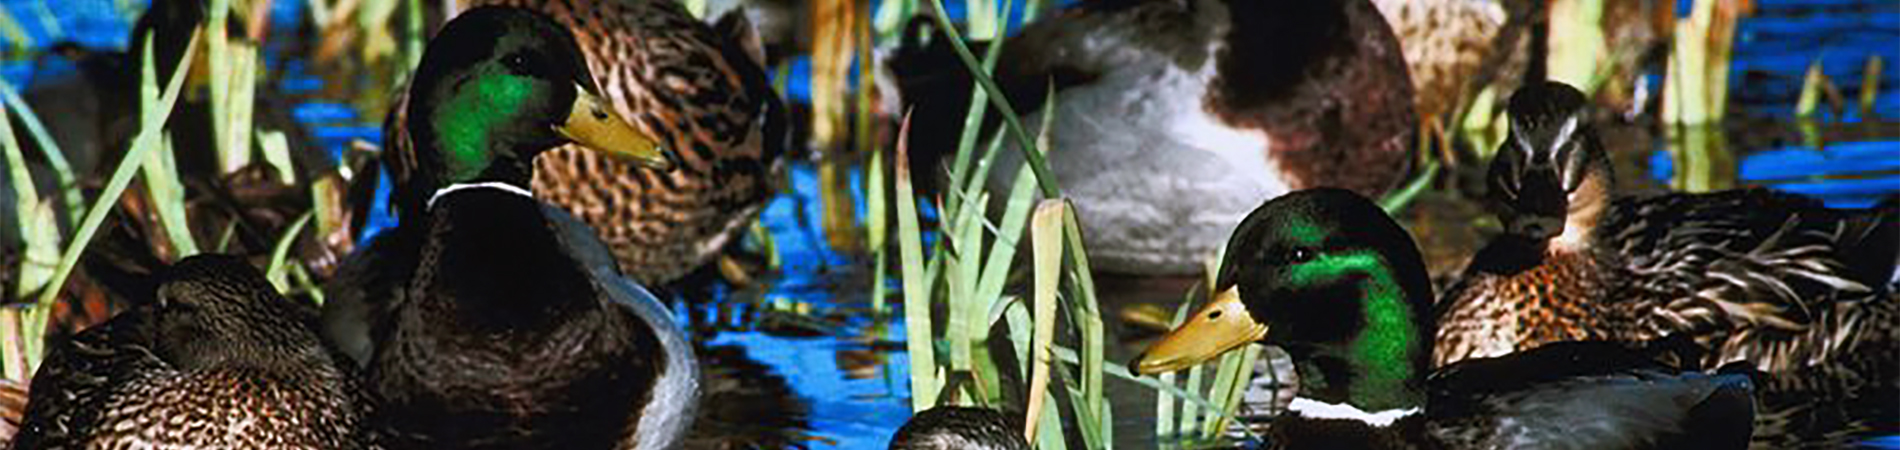 Mallard Ducks on Water